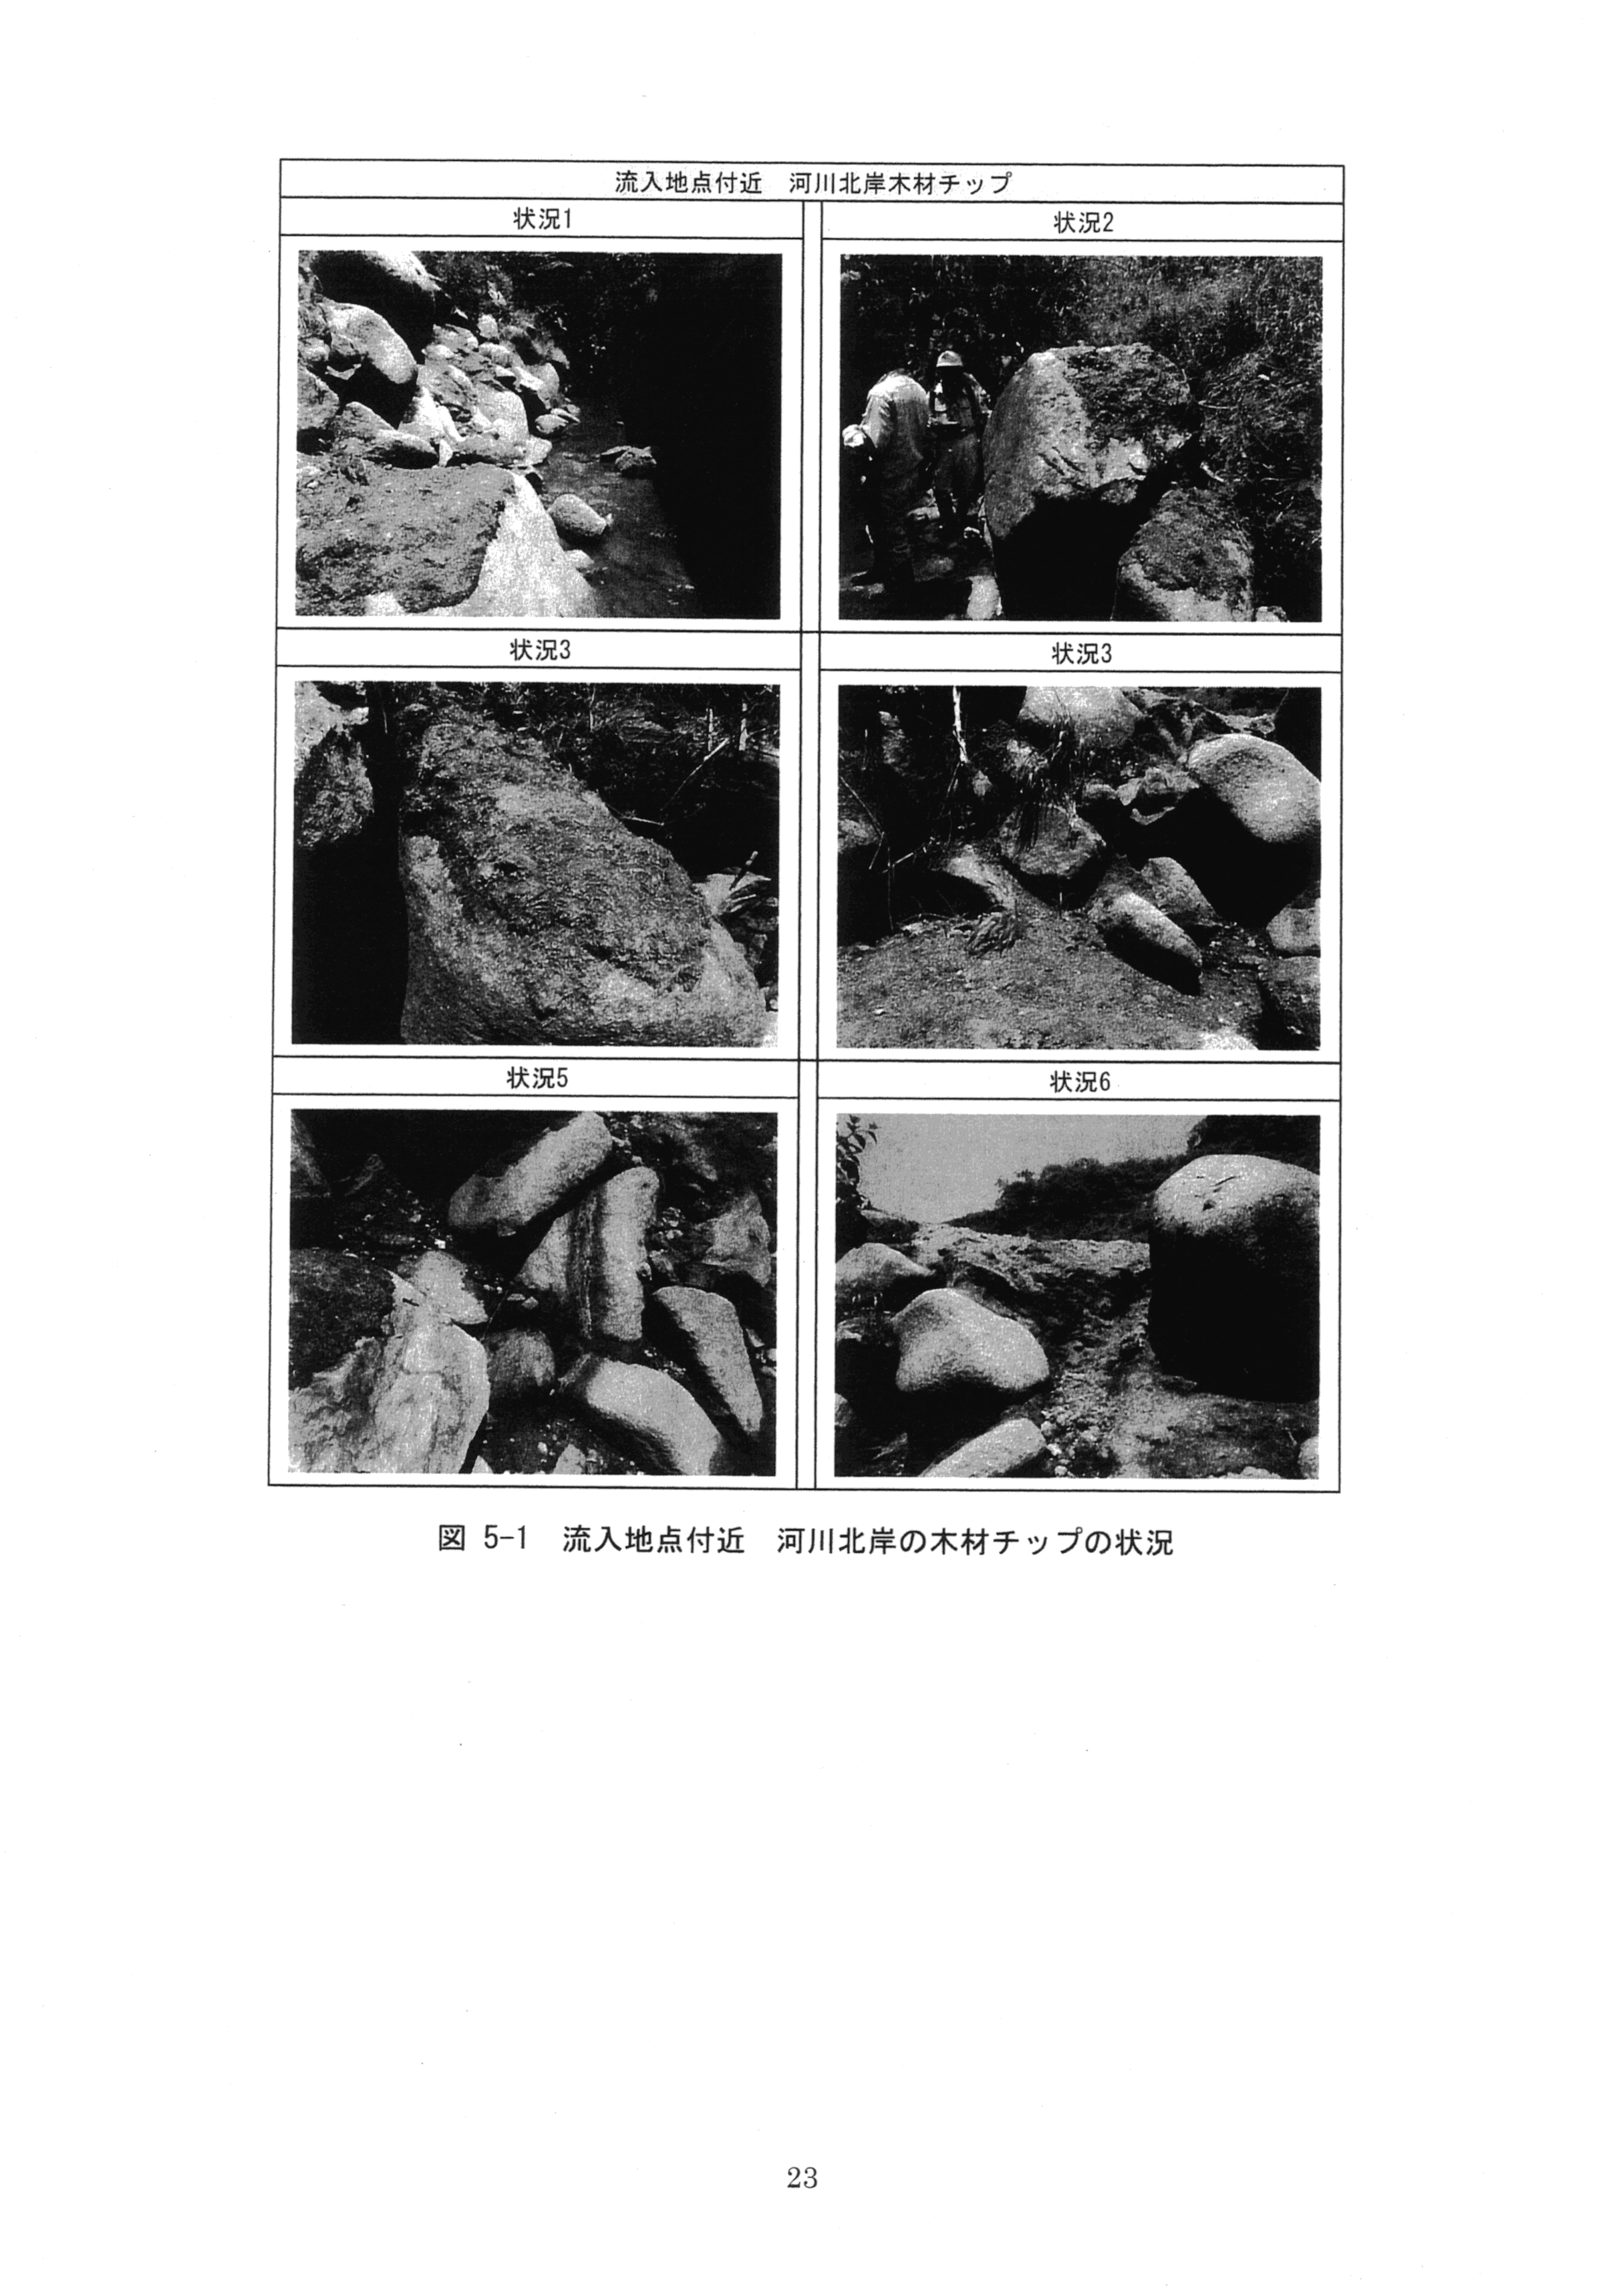 平成29年11月-赤田川水質汚濁状況調査報告書-25